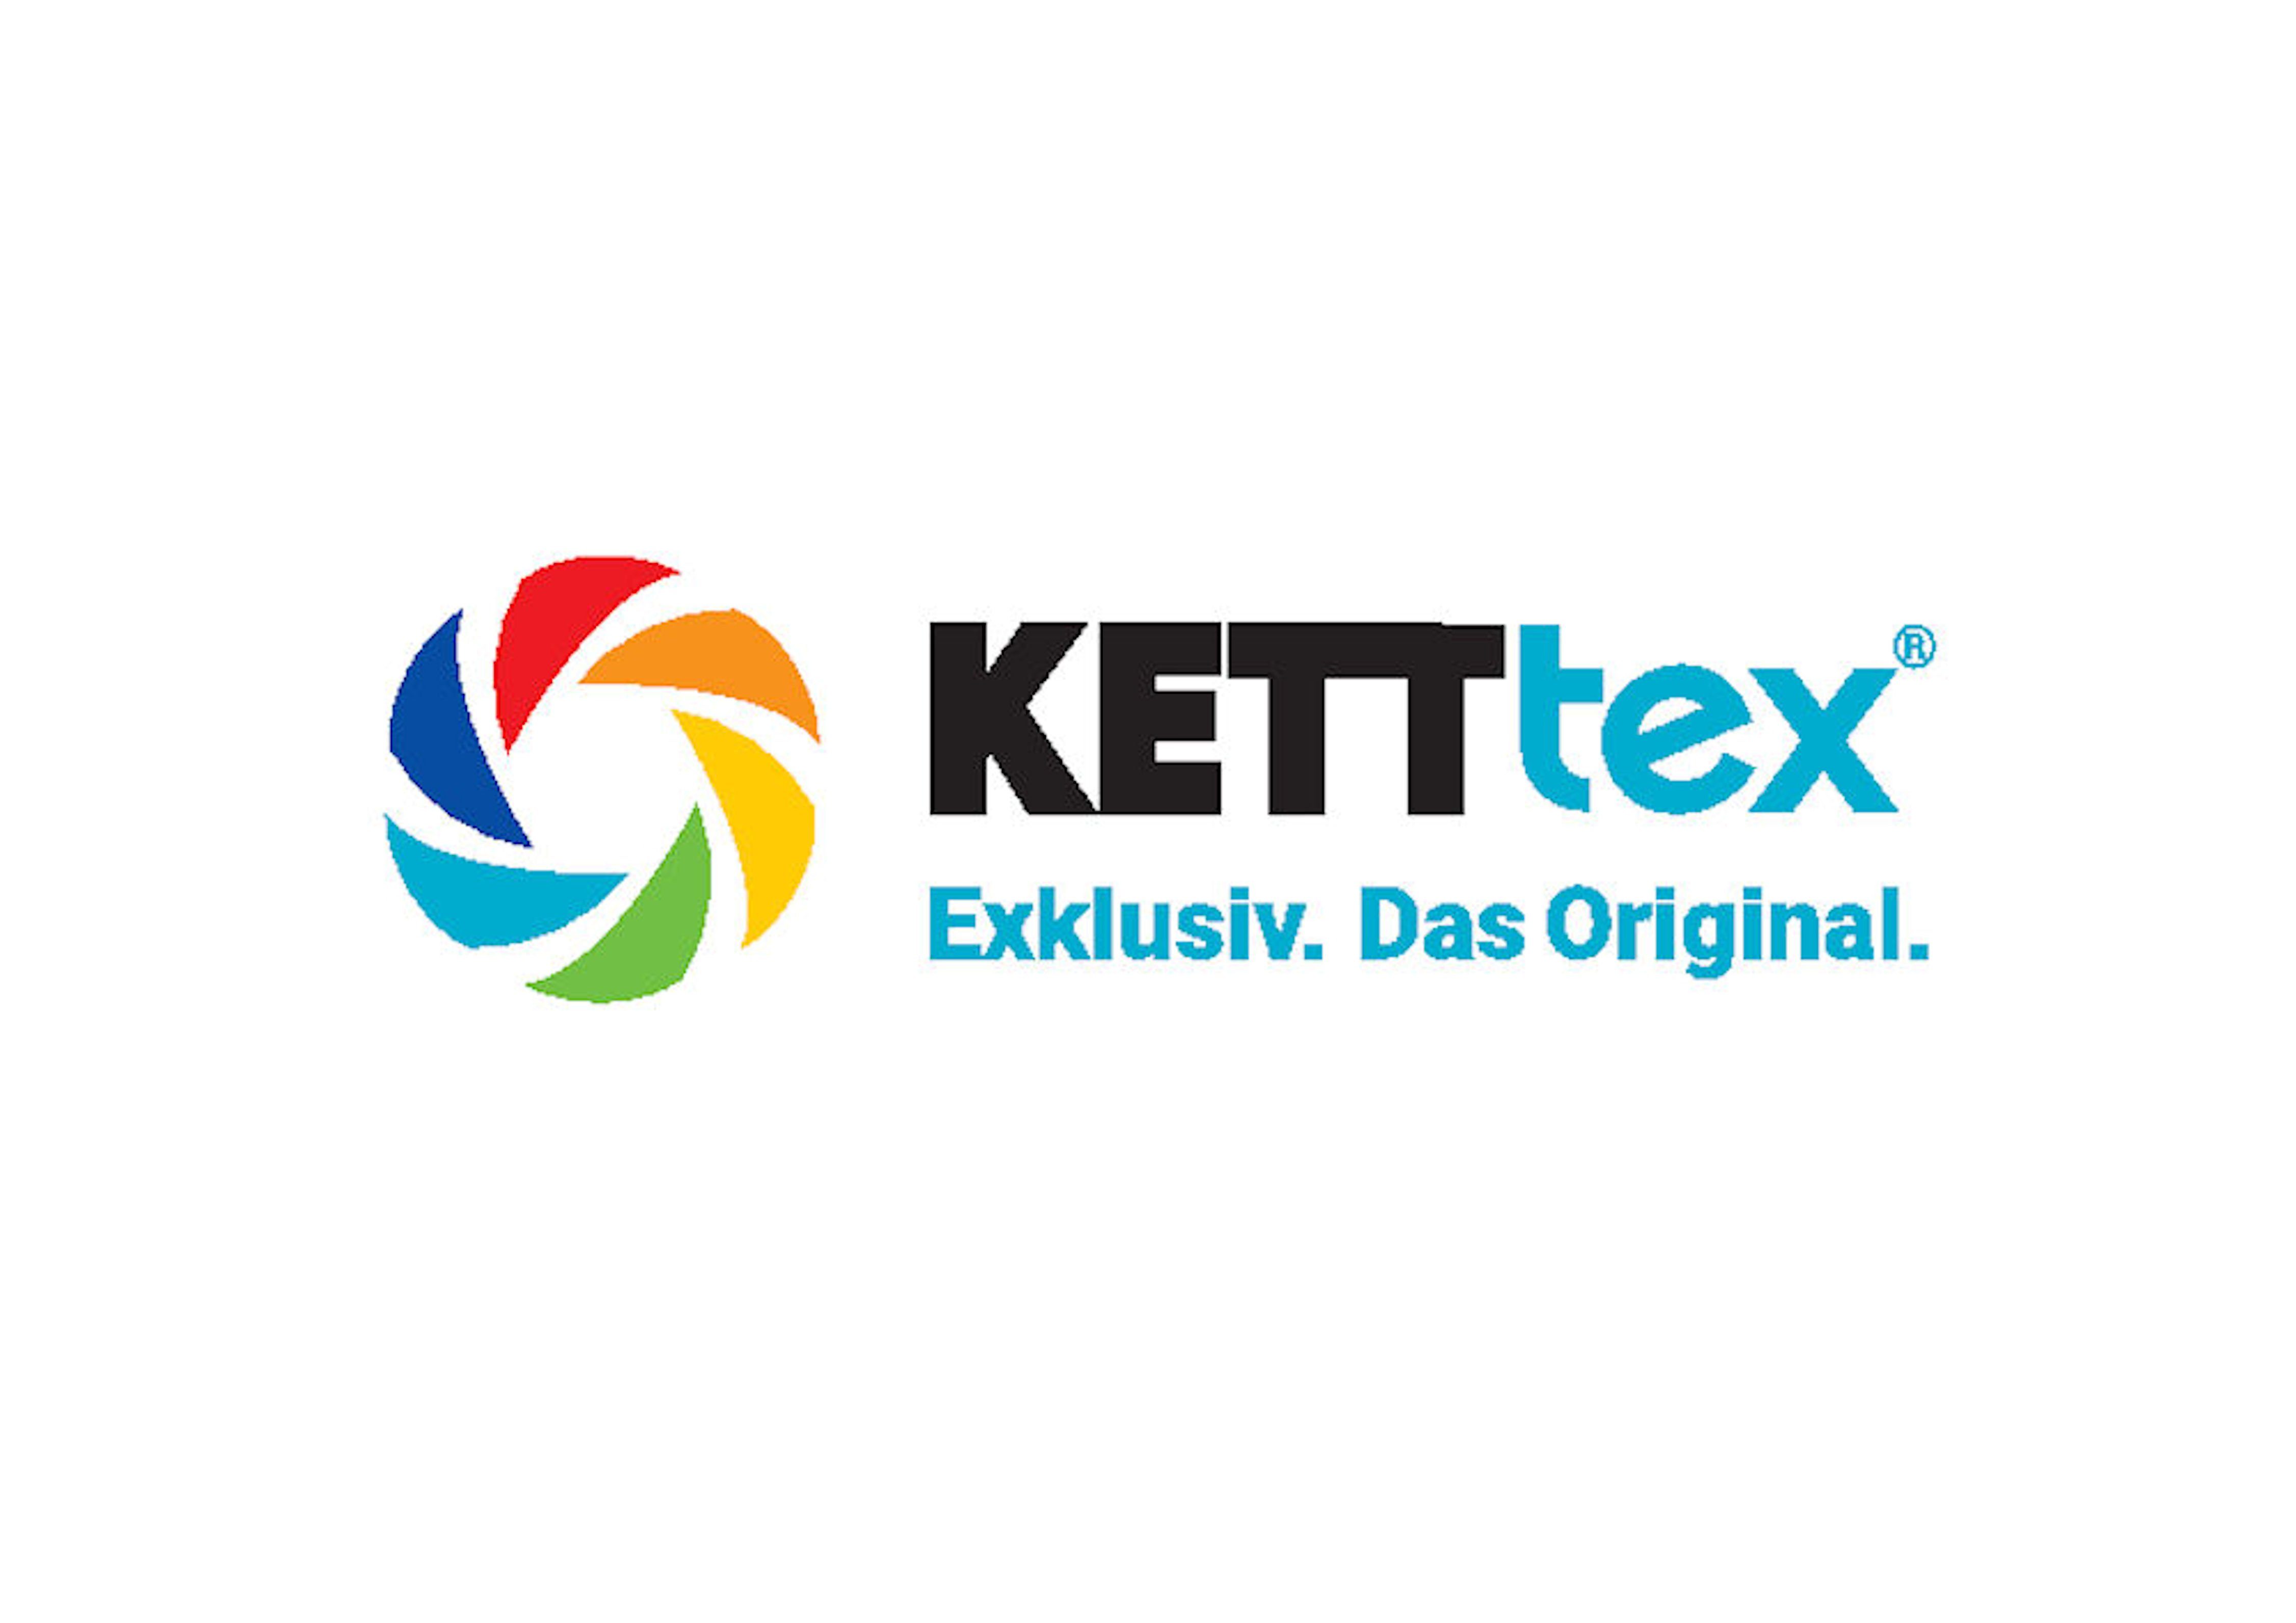 Liegenauflage KETTtex Quersteppung mehrfache Bäderliegeauflagen wattiertem silbergrau Tampa, Exklusiv Stehsaum, mit KETTtex EXKLUSIV